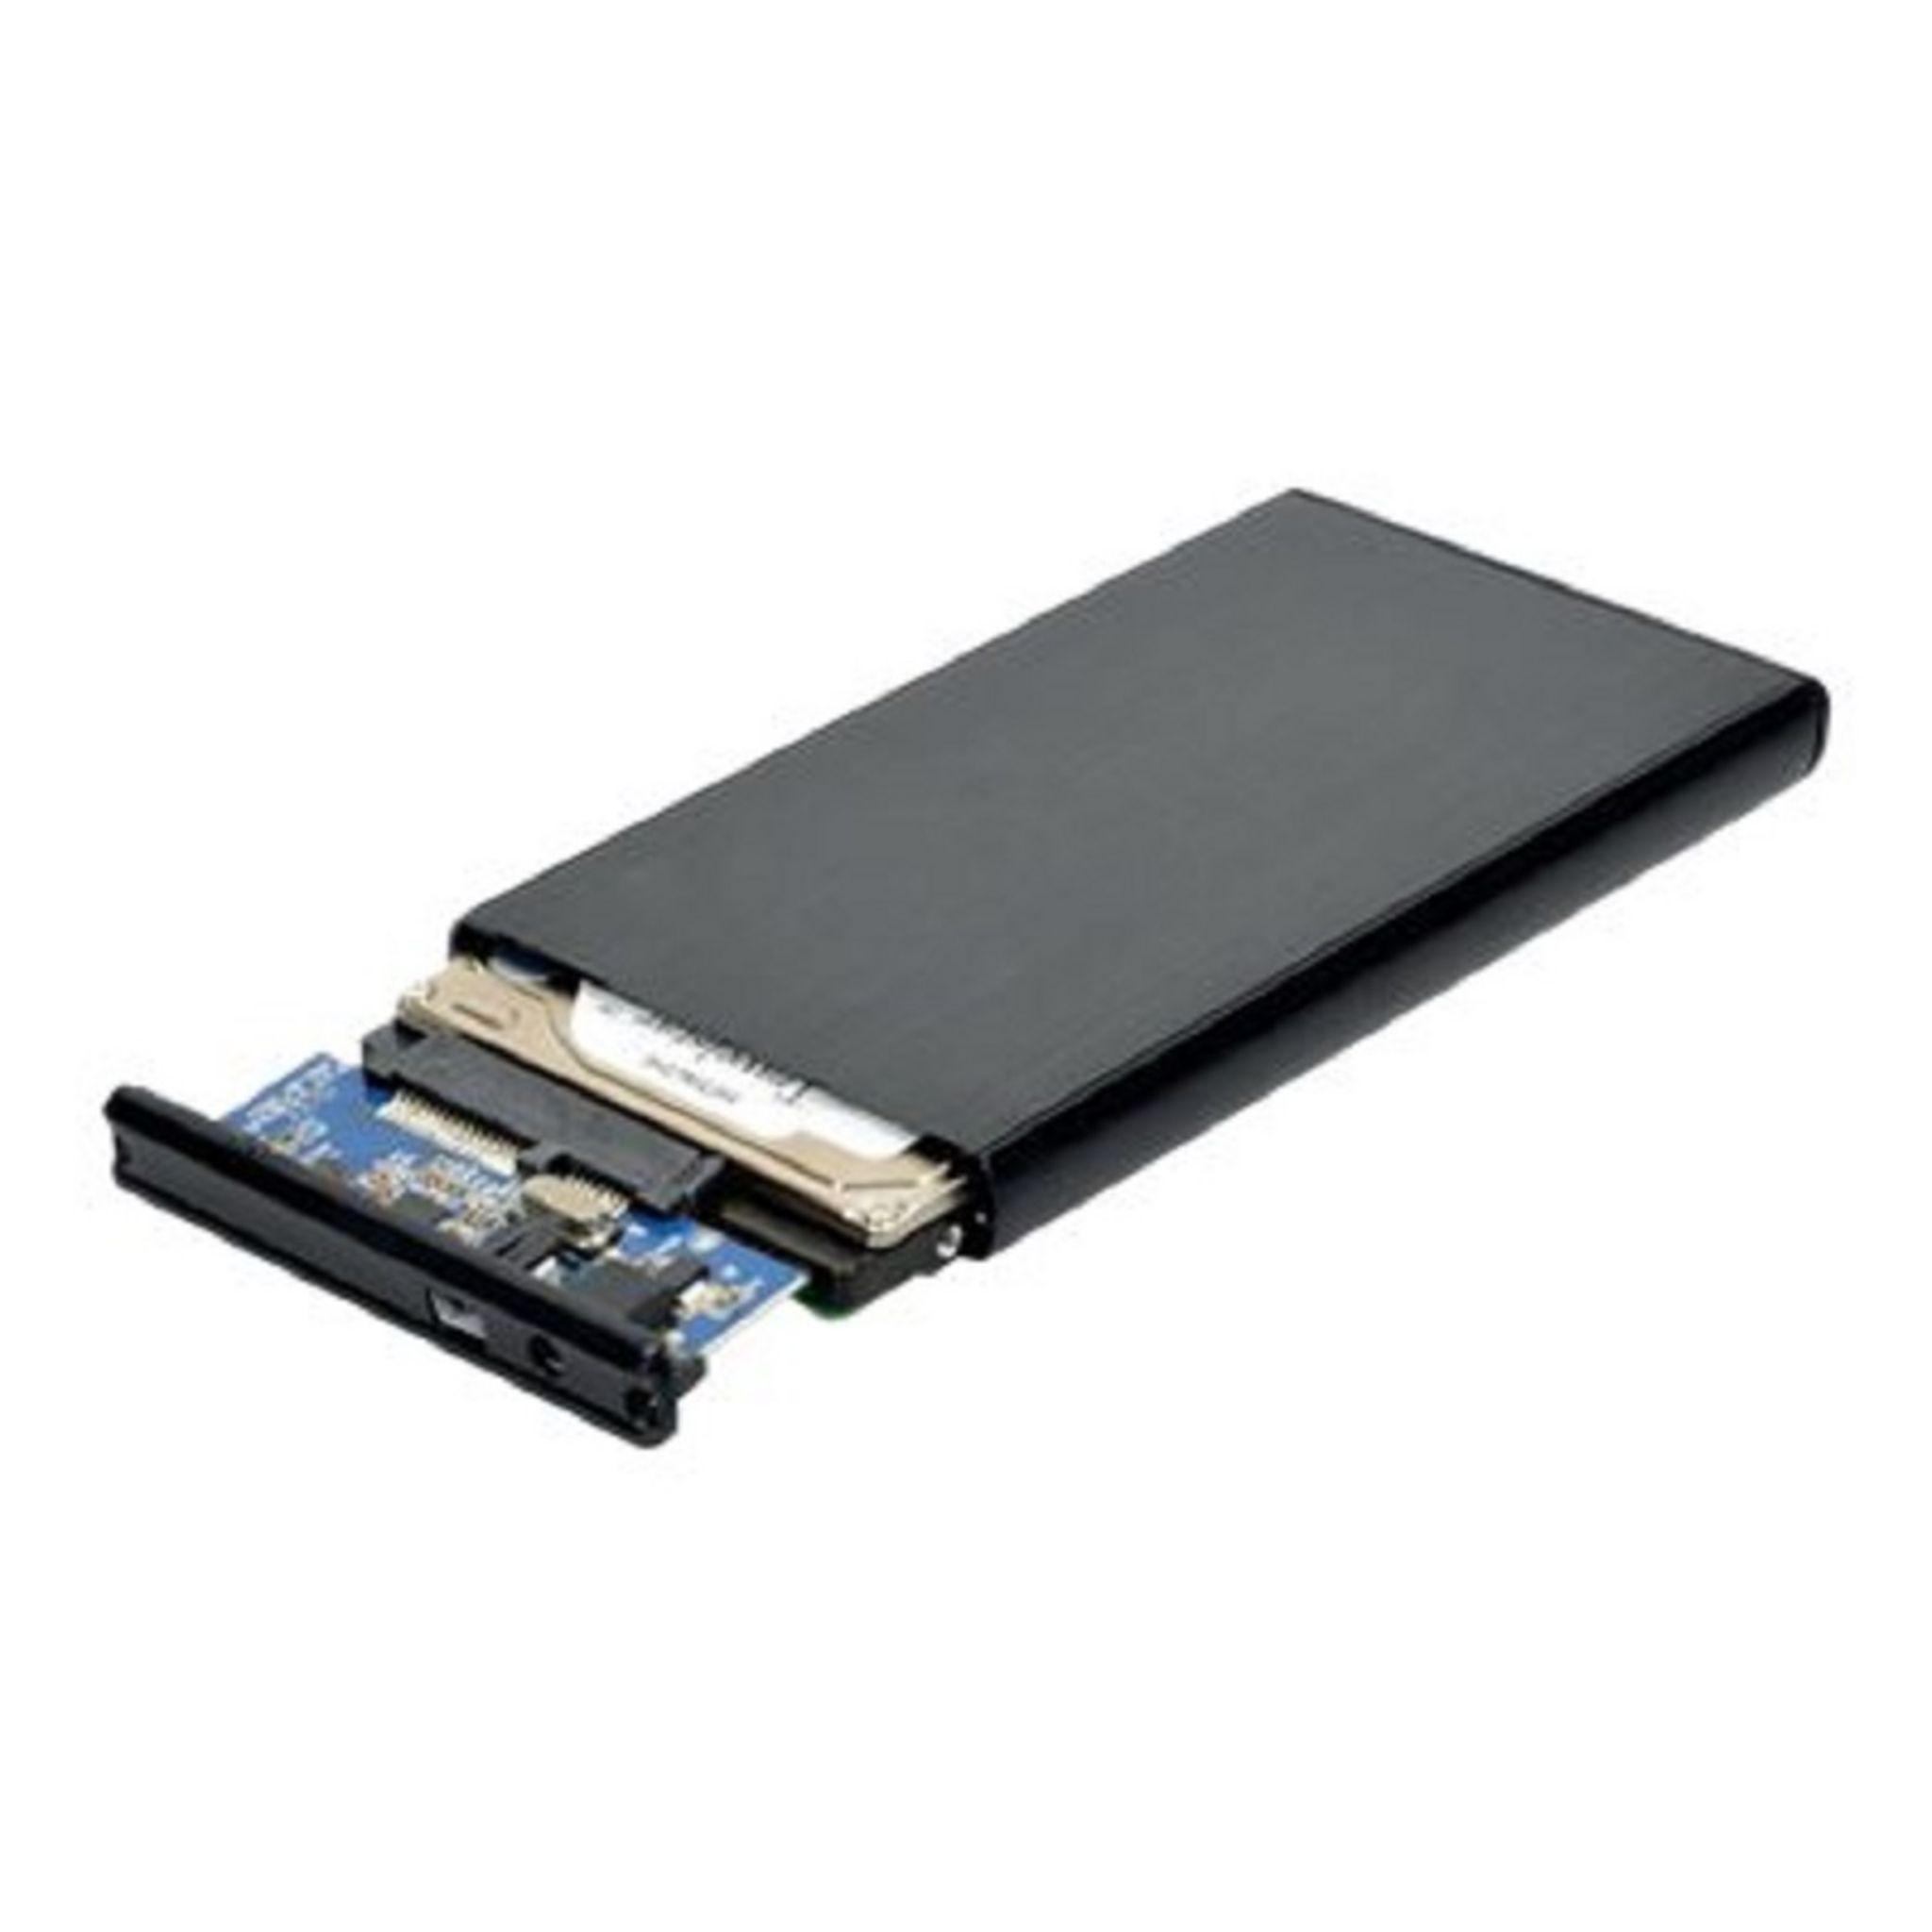 Comment utiliser votre ancien SSD comme unité de stockage externe